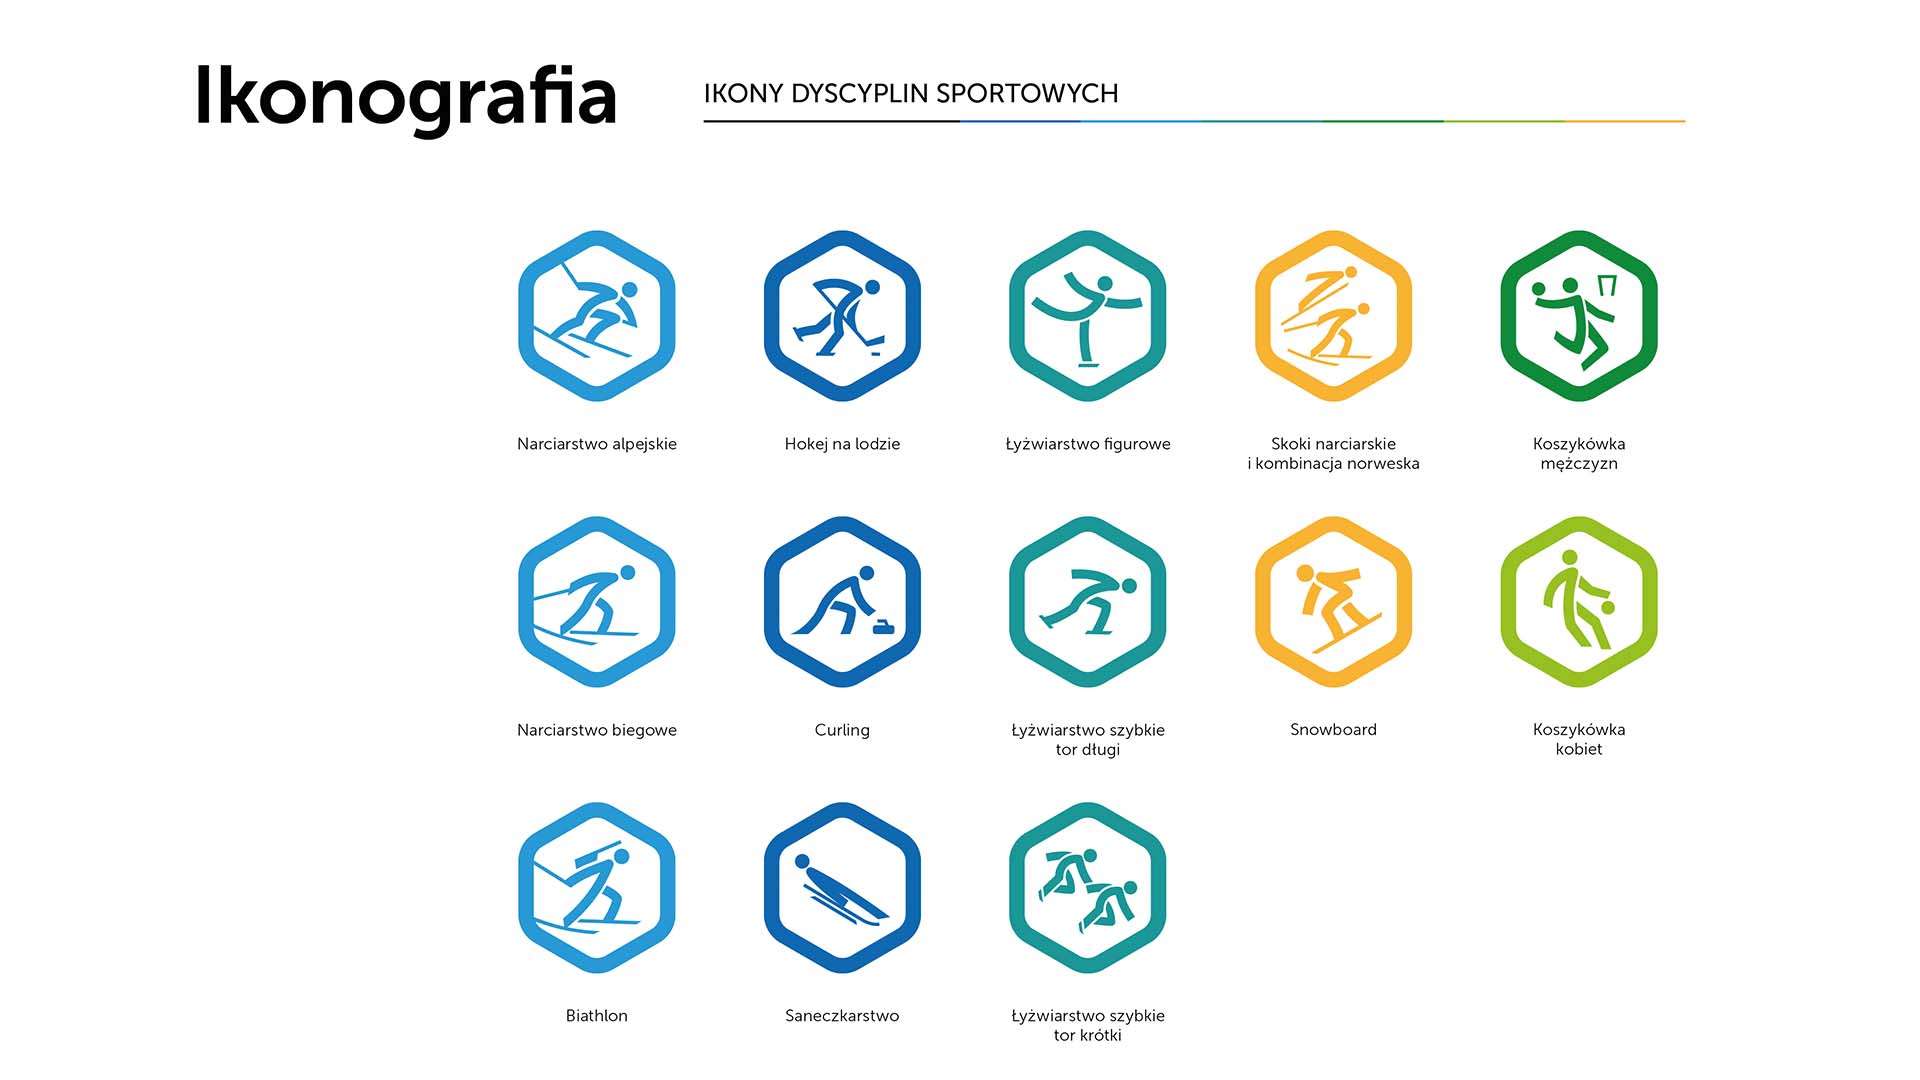 Ifografika przedstawiająca ikony dyscyplin sportowych rozgrywanych podczas zimowej olimpiady młodzieży. Znaki opisane w artykule.